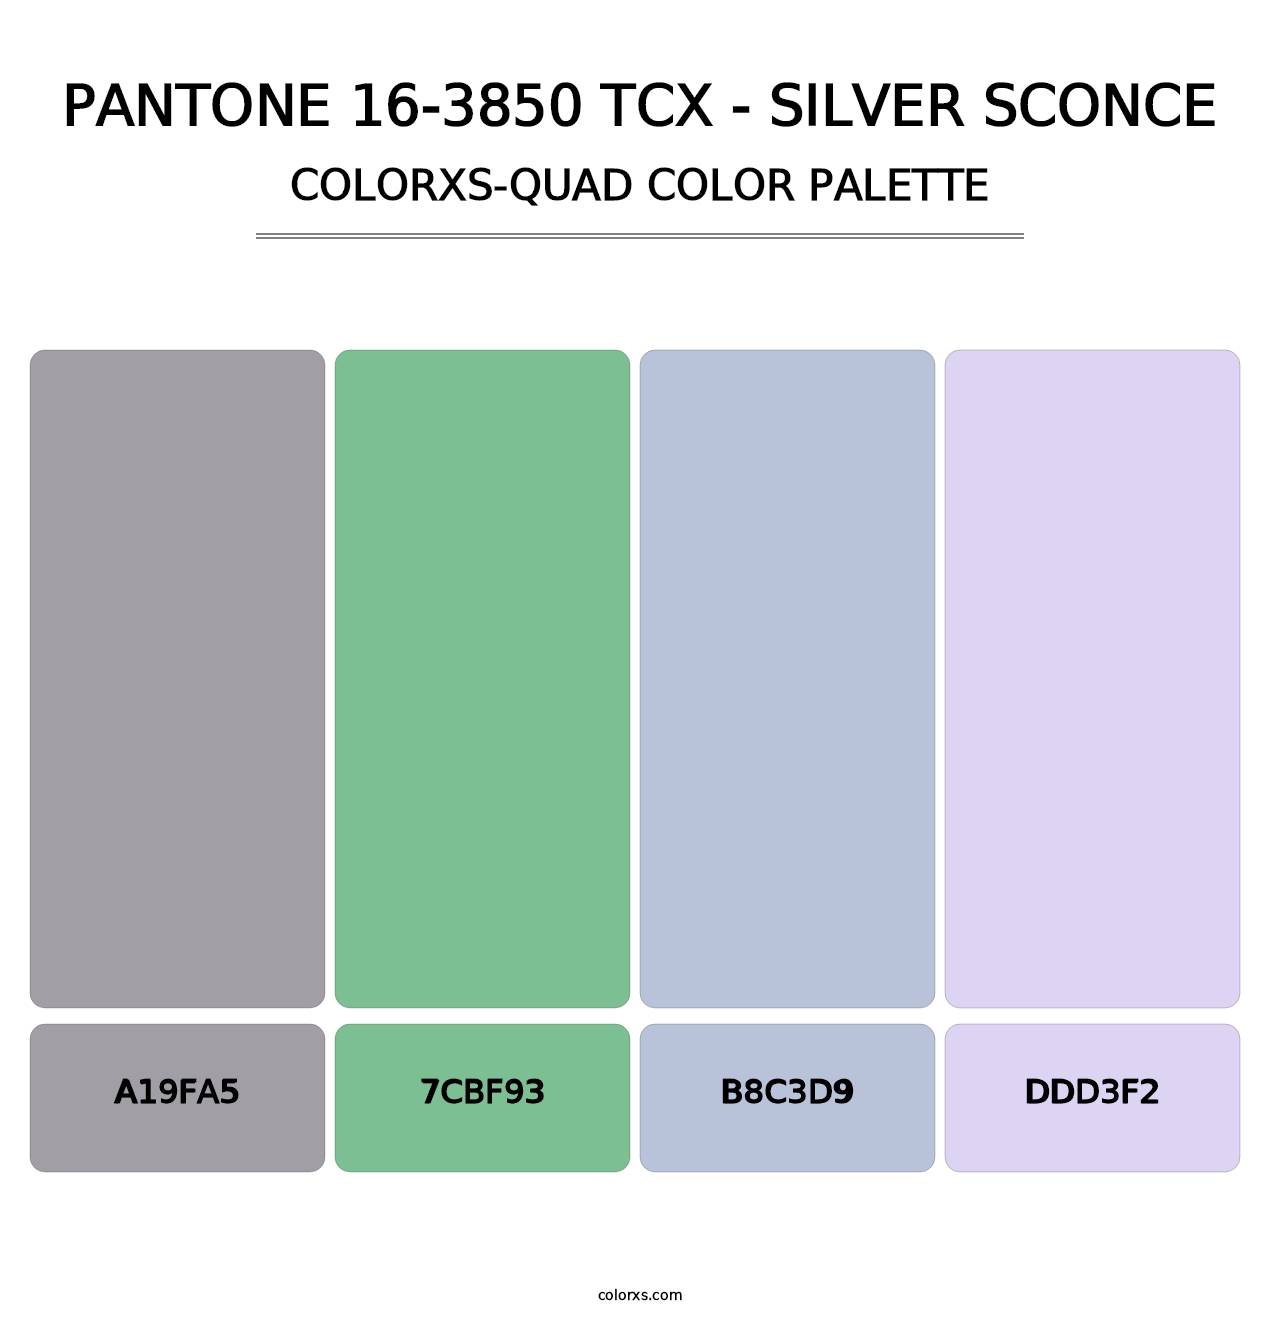 PANTONE 16-3850 TCX - Silver Sconce - Colorxs Quad Palette